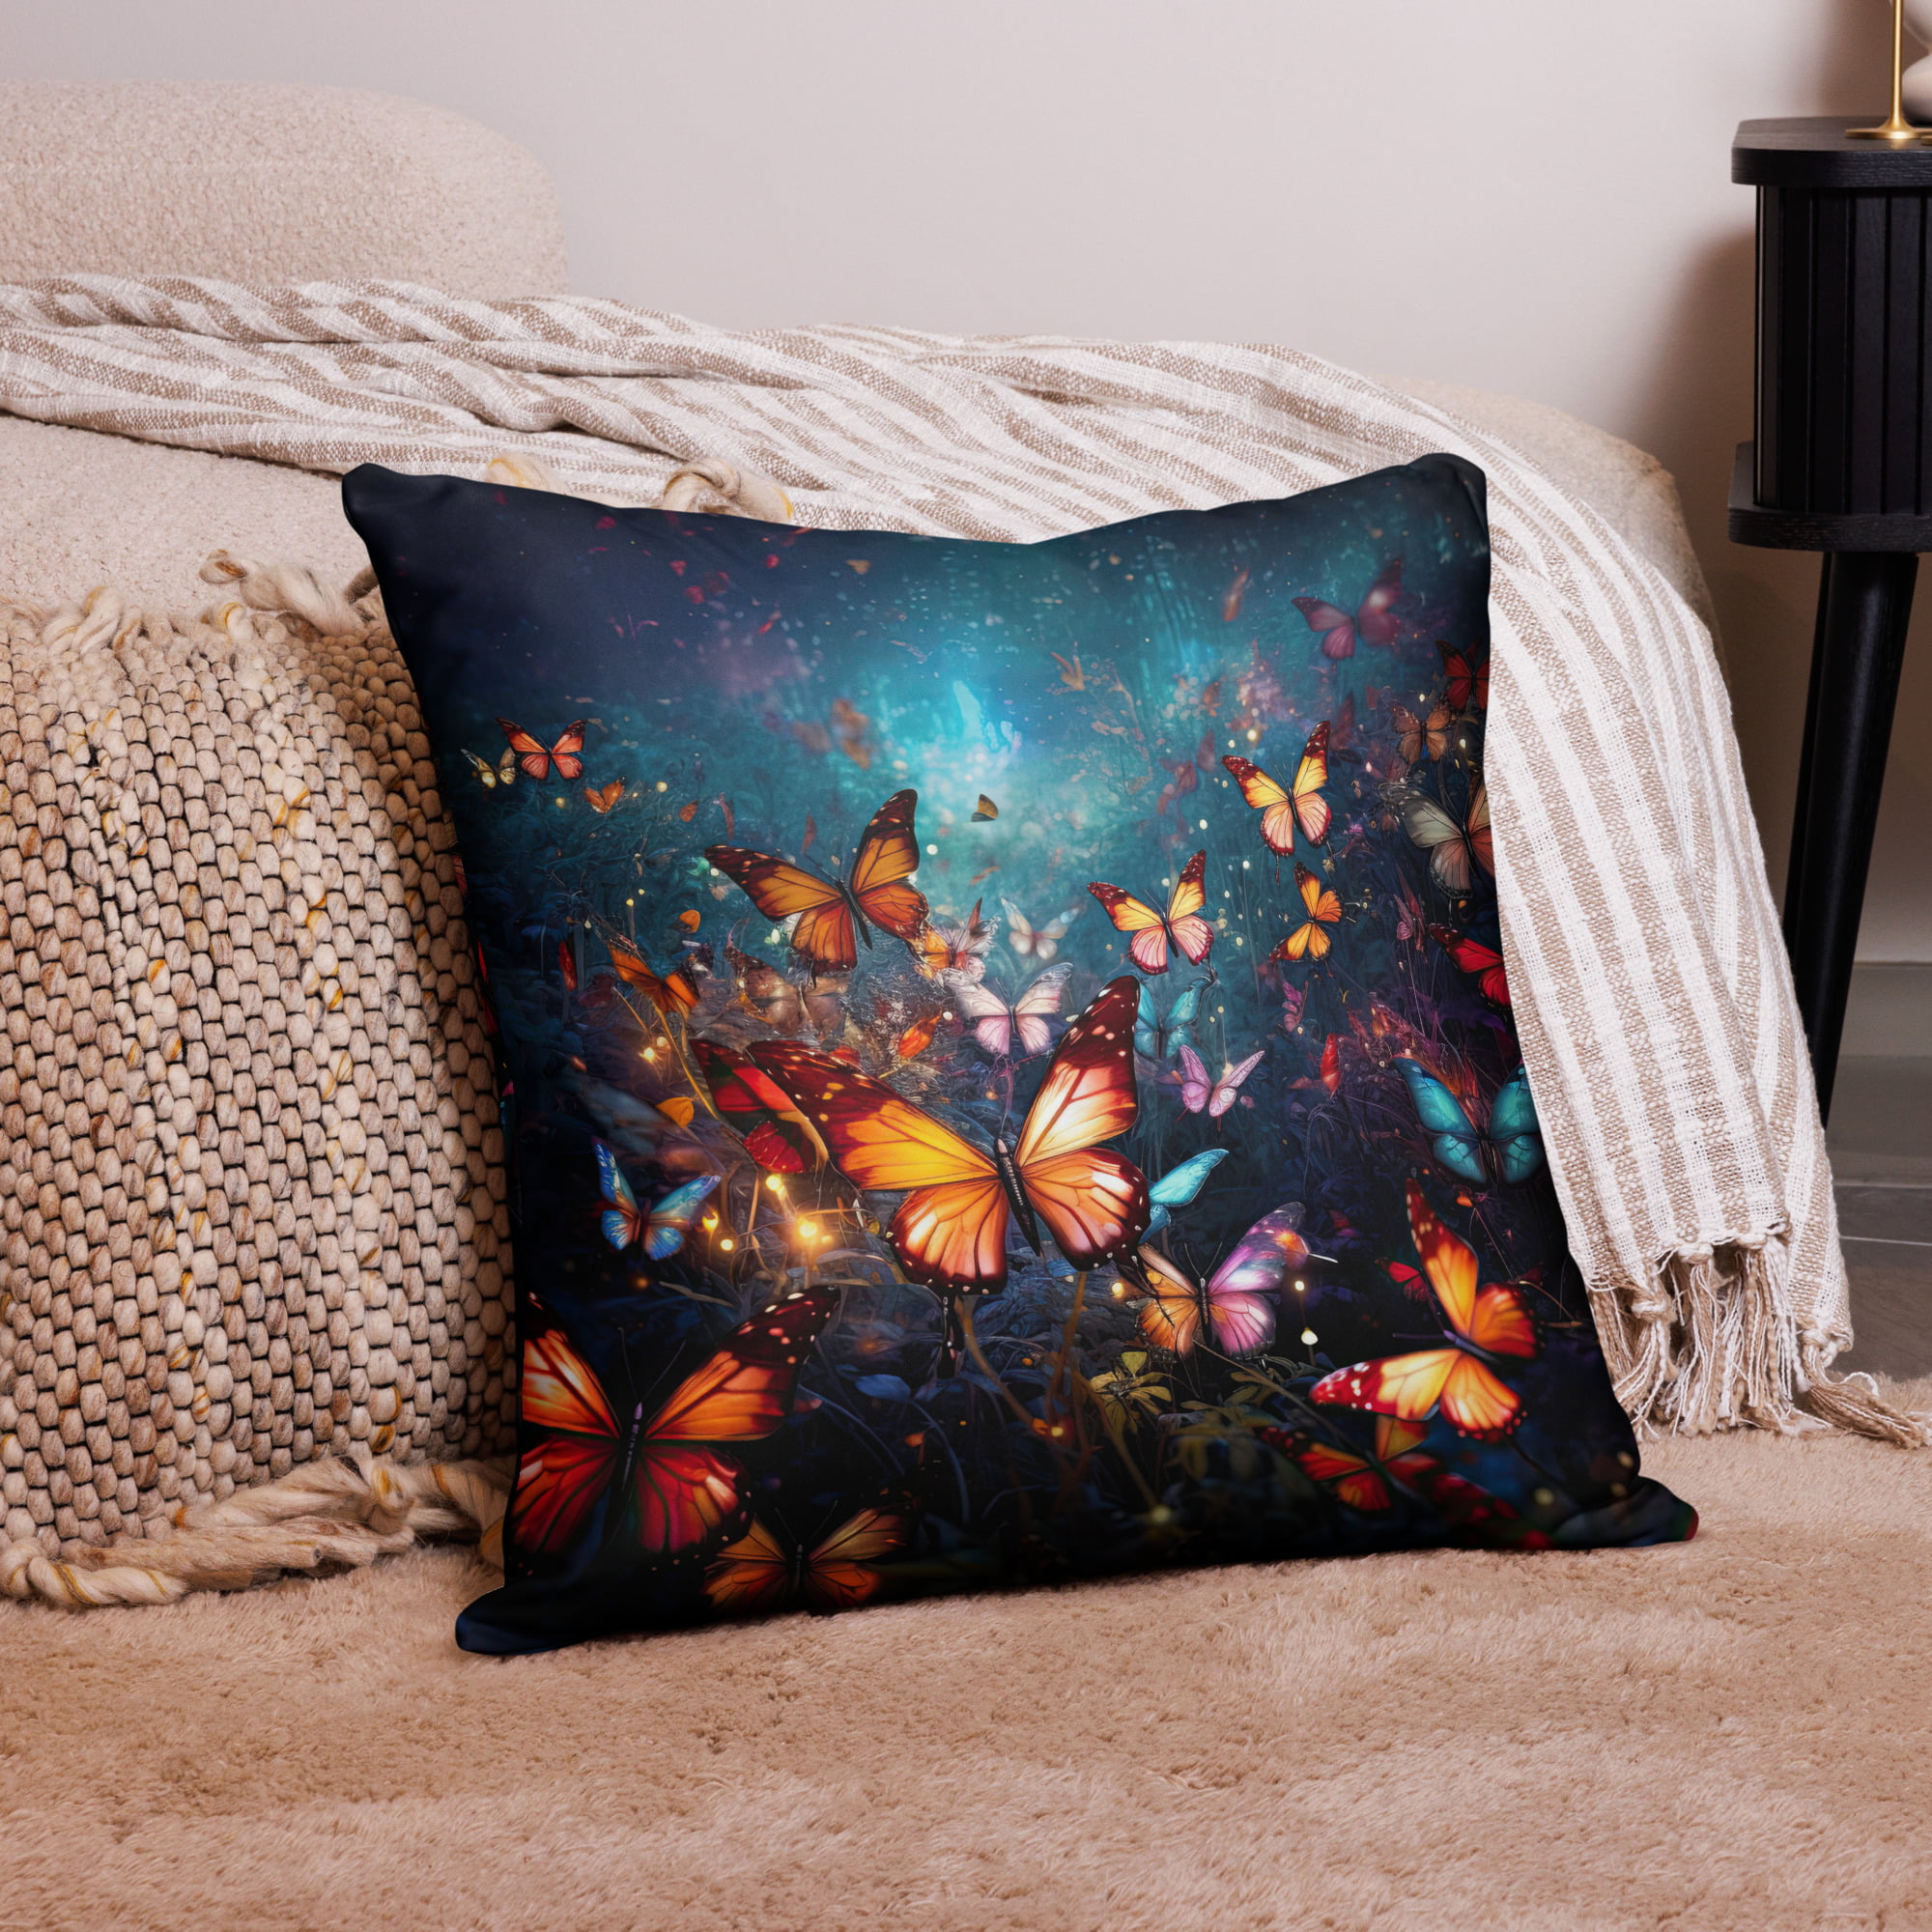 Butterflies of Light Throw Pillow – 22×22